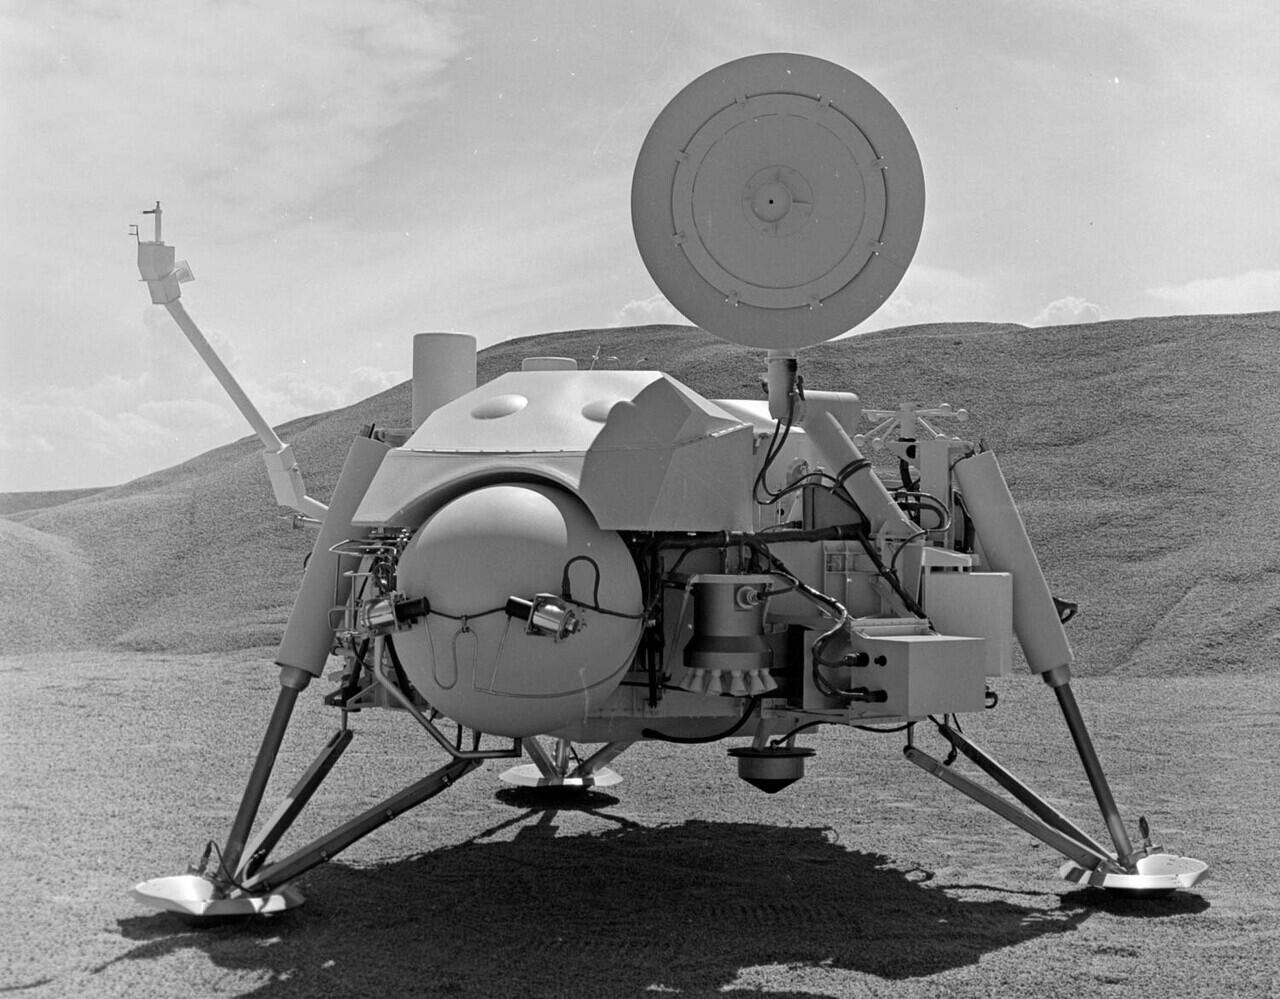 Apa sih Pentingnya Rover Perseverance Dikirim ke Mars? 